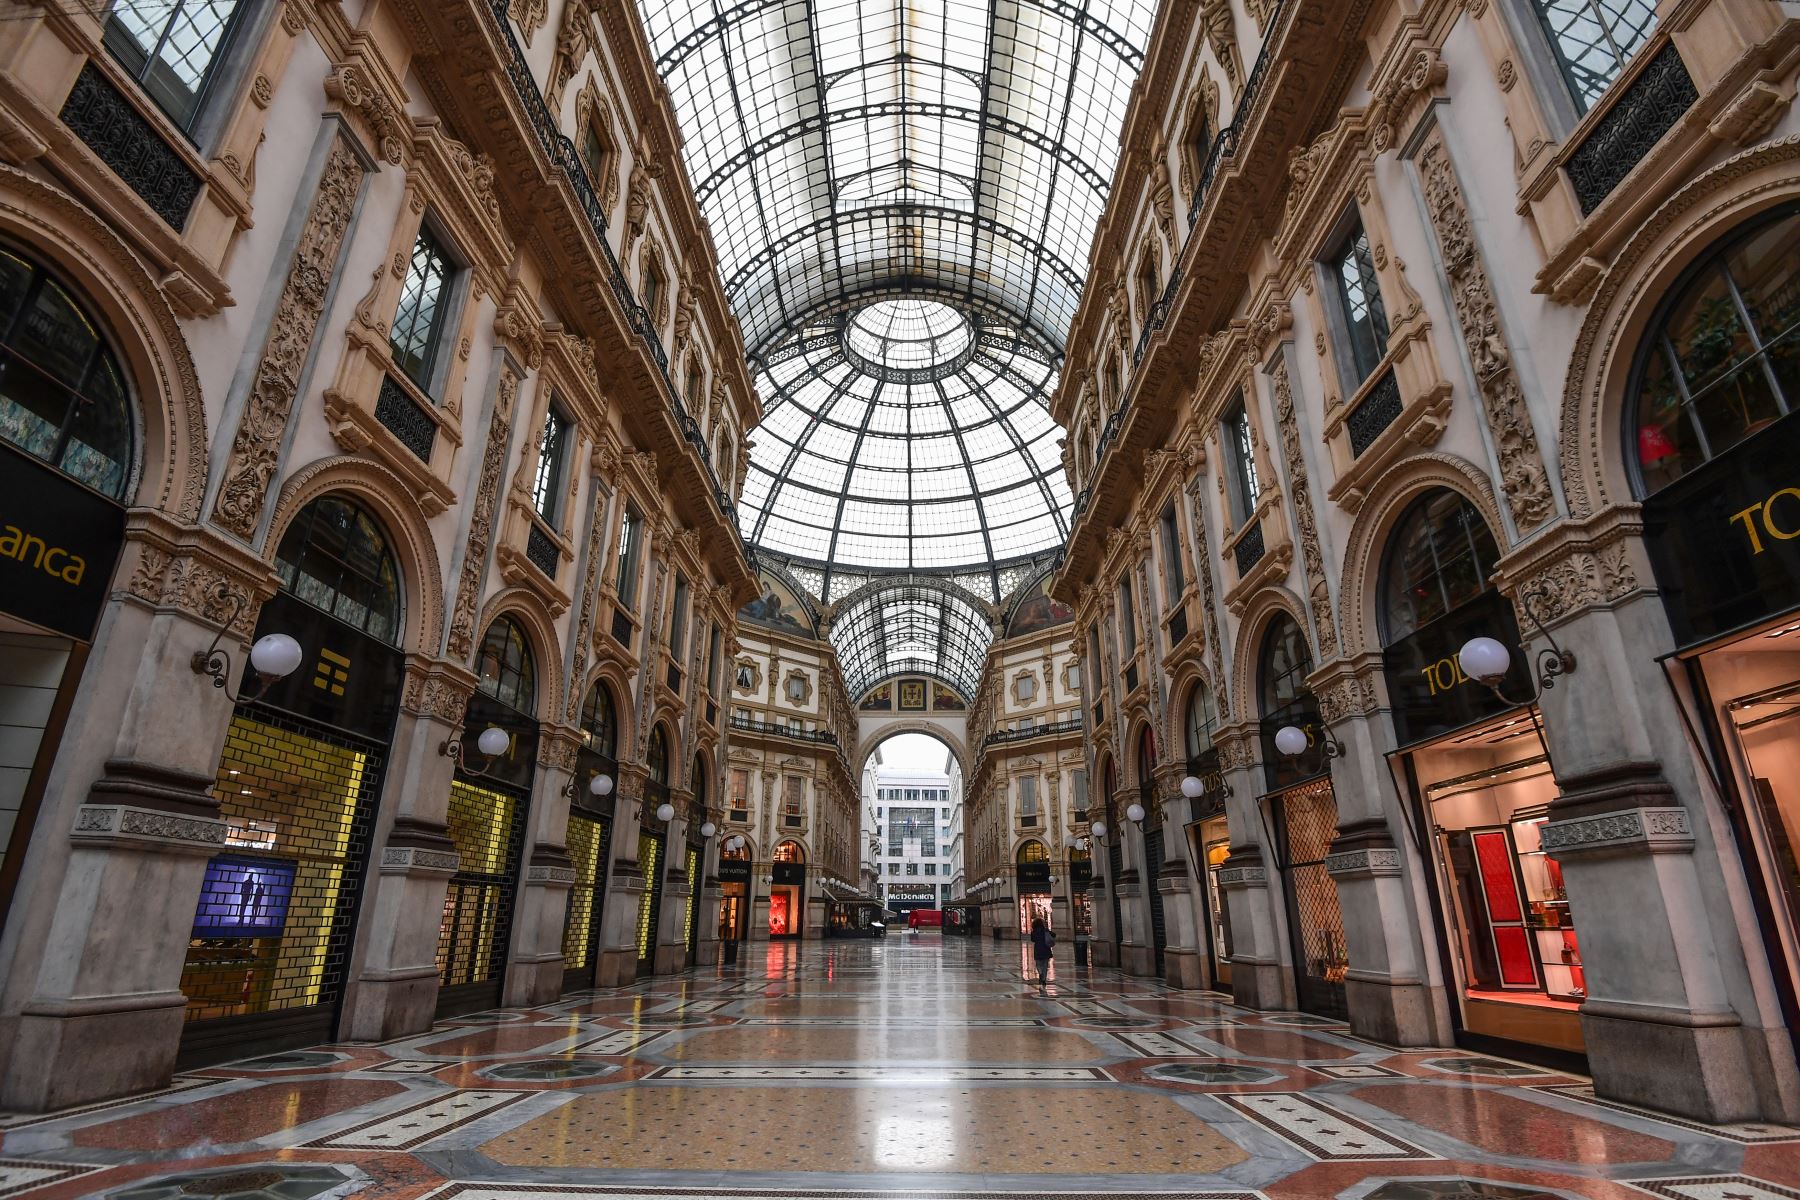 Una vista general muestra un centro comercial abandonado Galería Vittorio Emanuele II en Milán. Foto: AFP